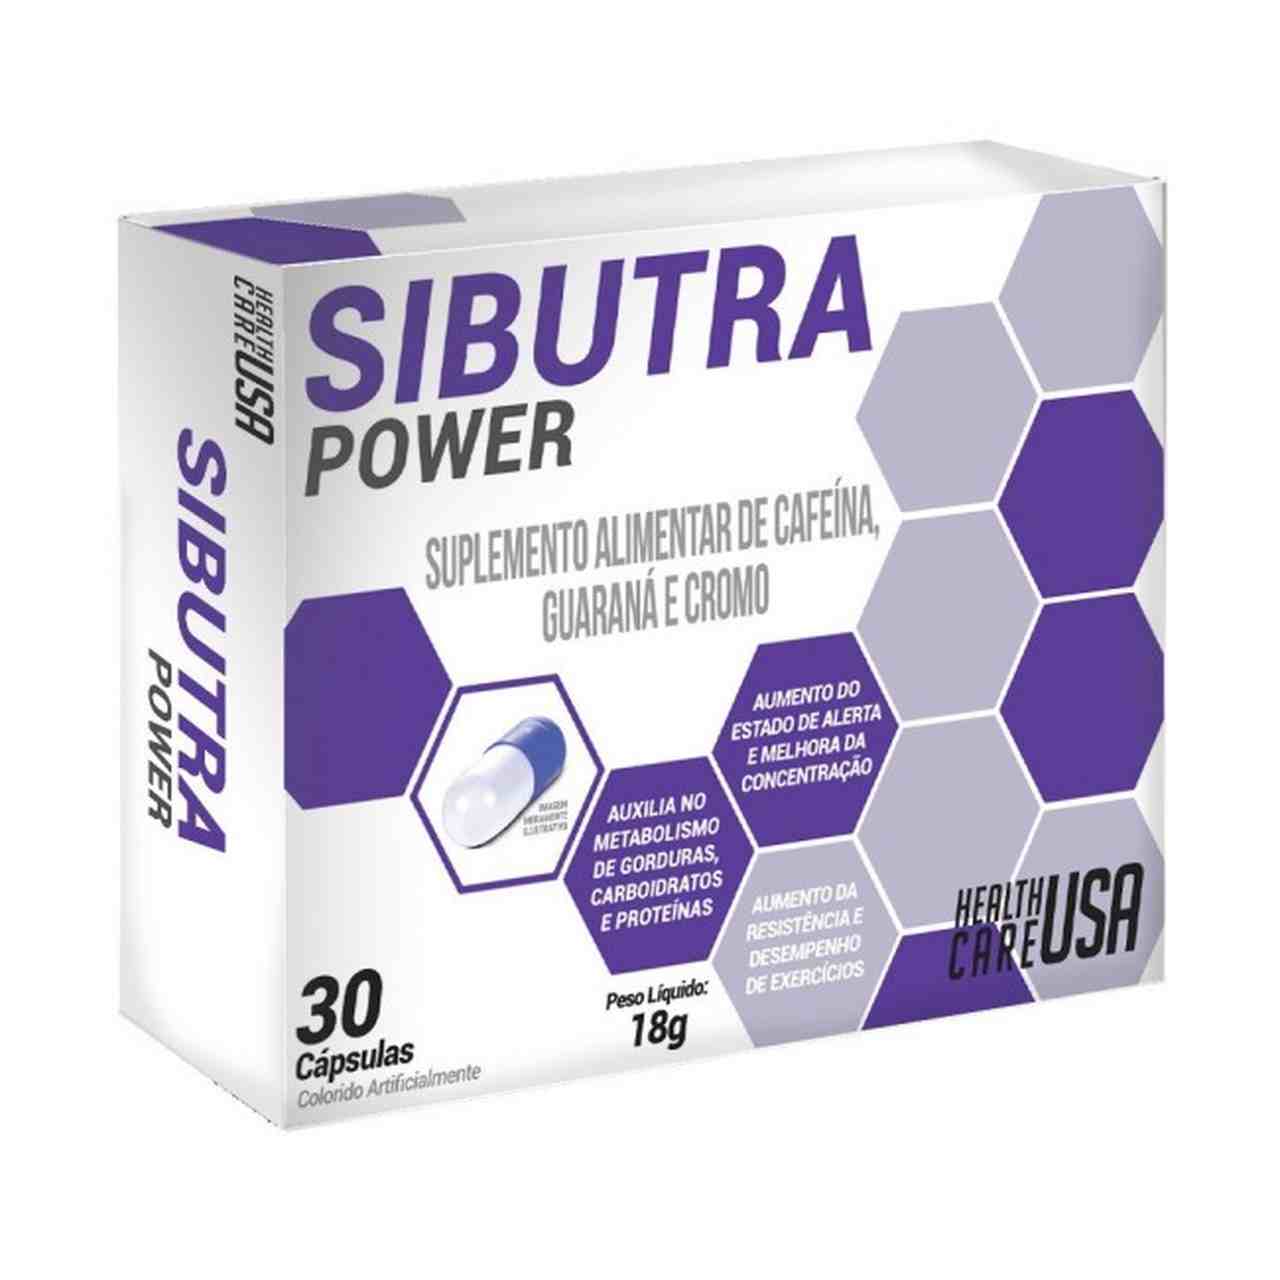 Emagrecedor Sibutra Power é melhor que Sibutramina